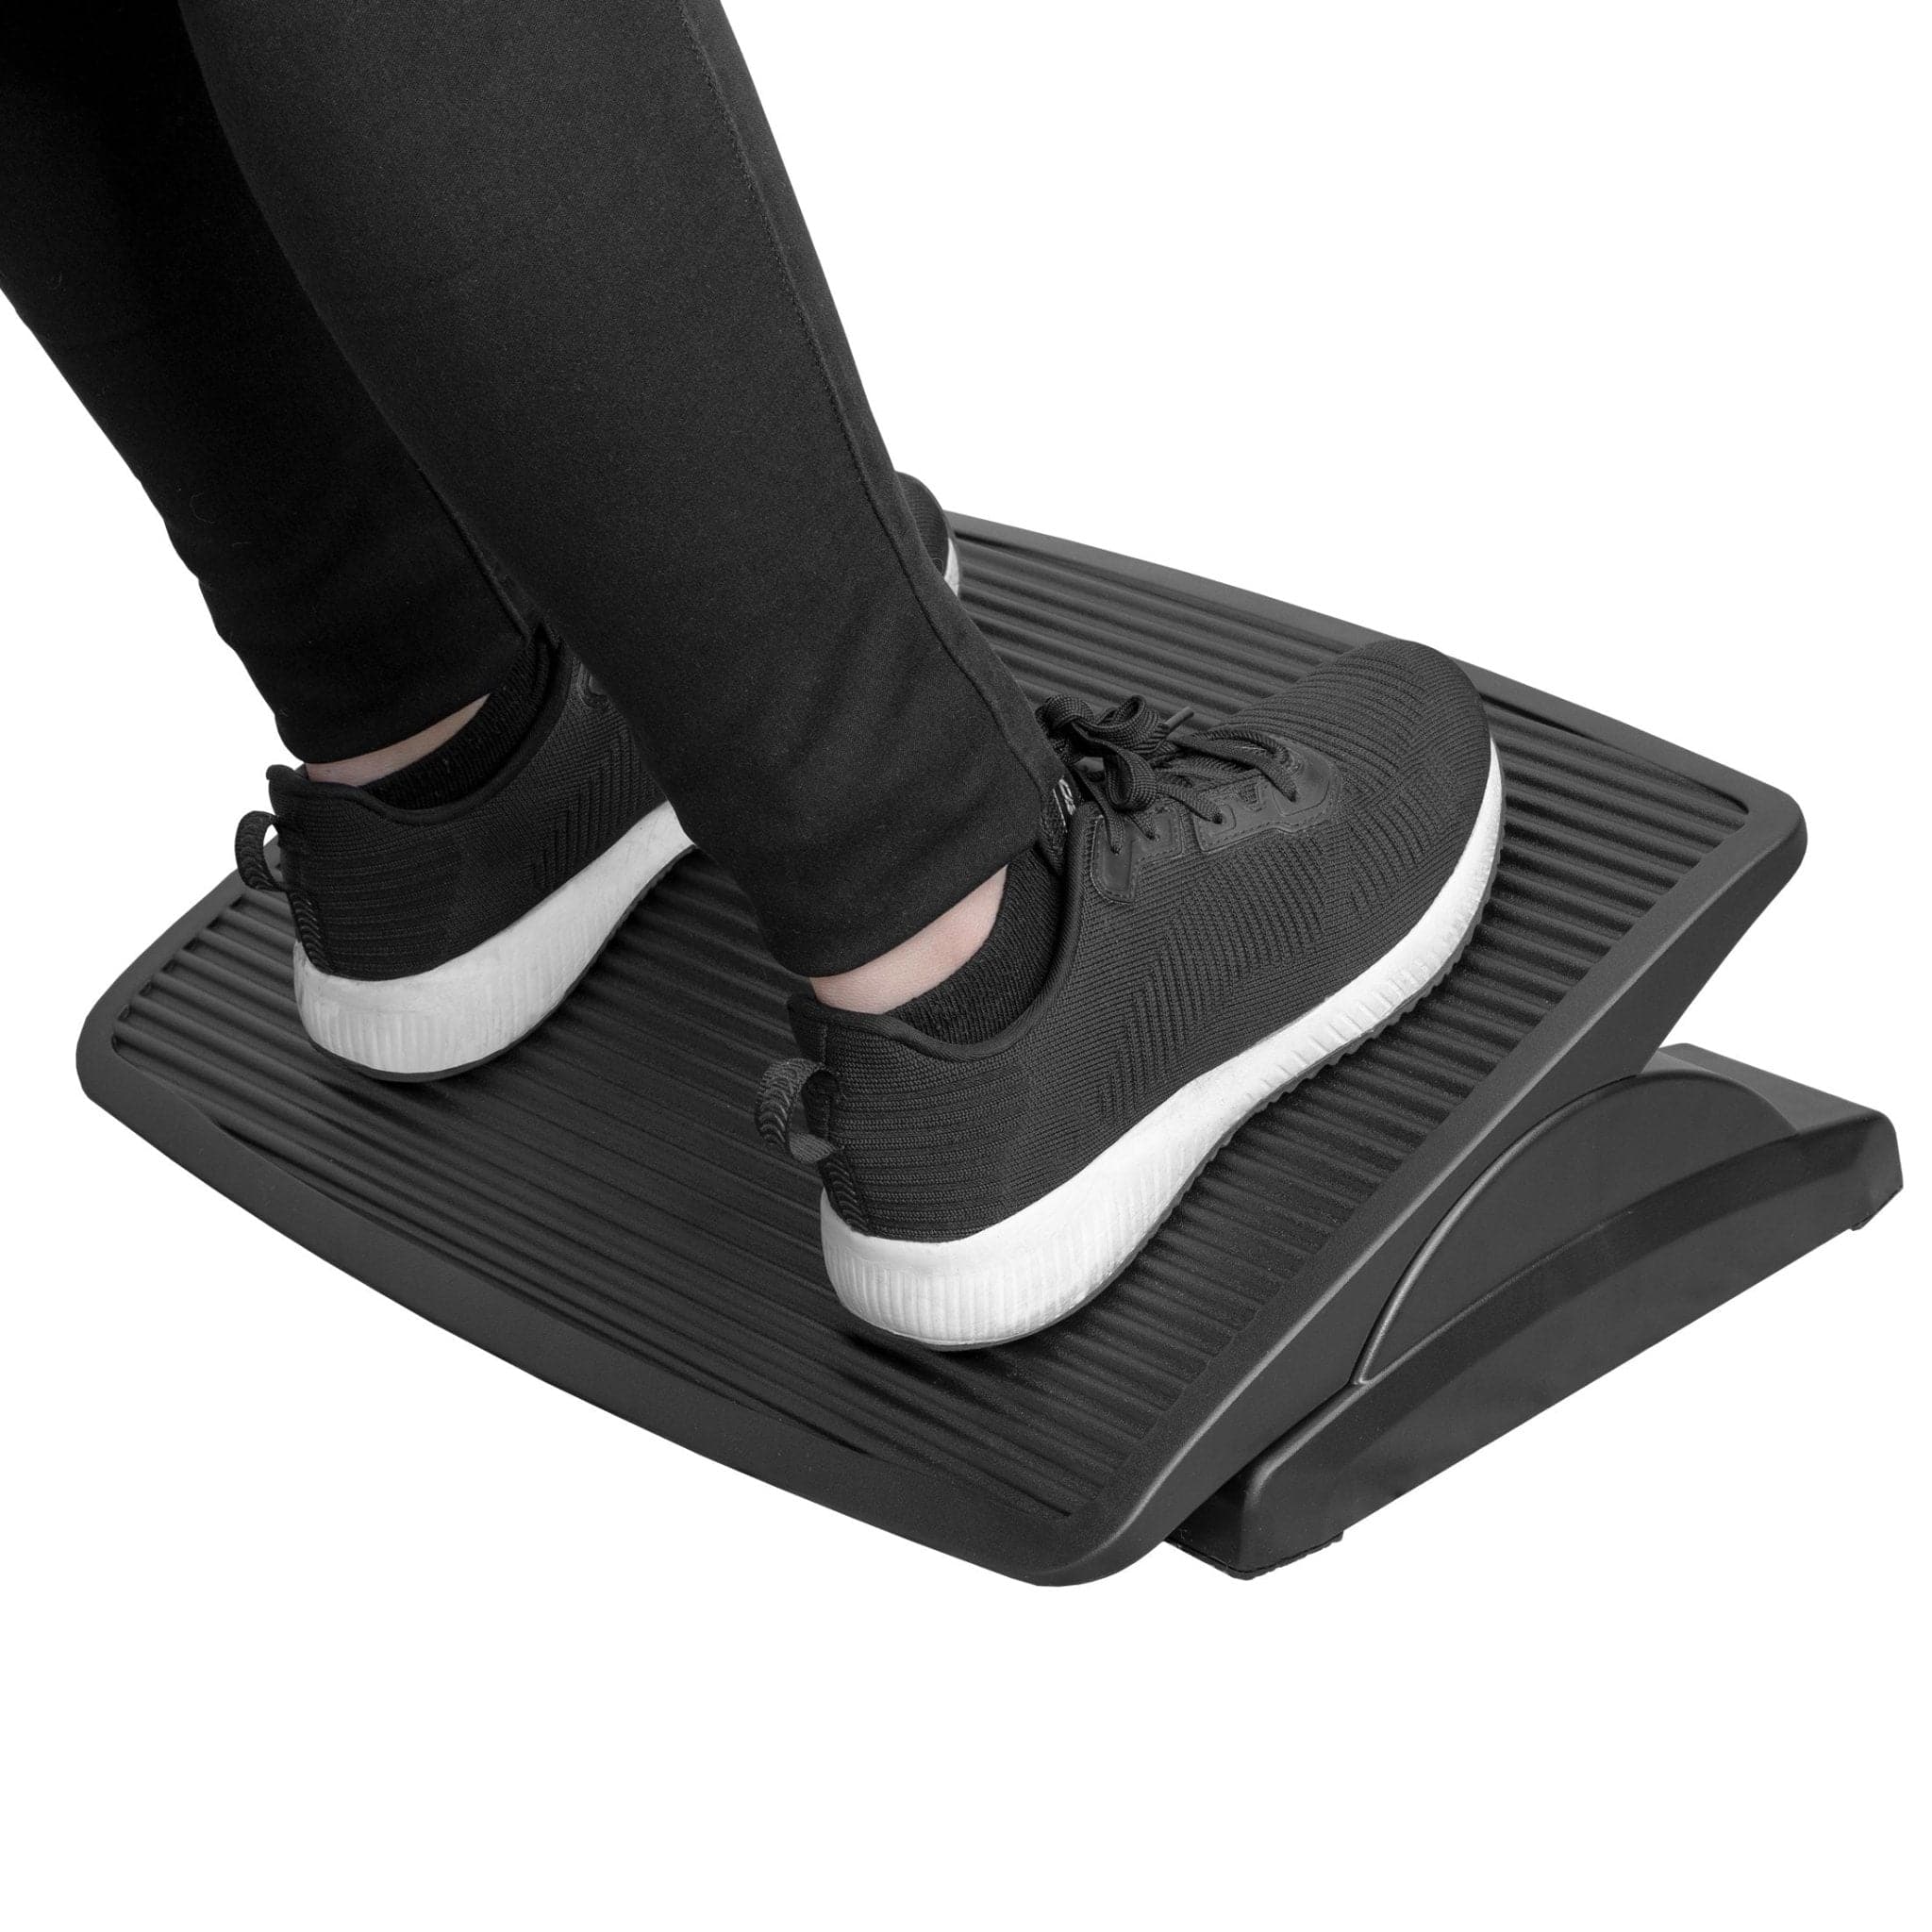 Mount-It Adjustable Ergonomic Foot Rest – Ergo Standing Desks